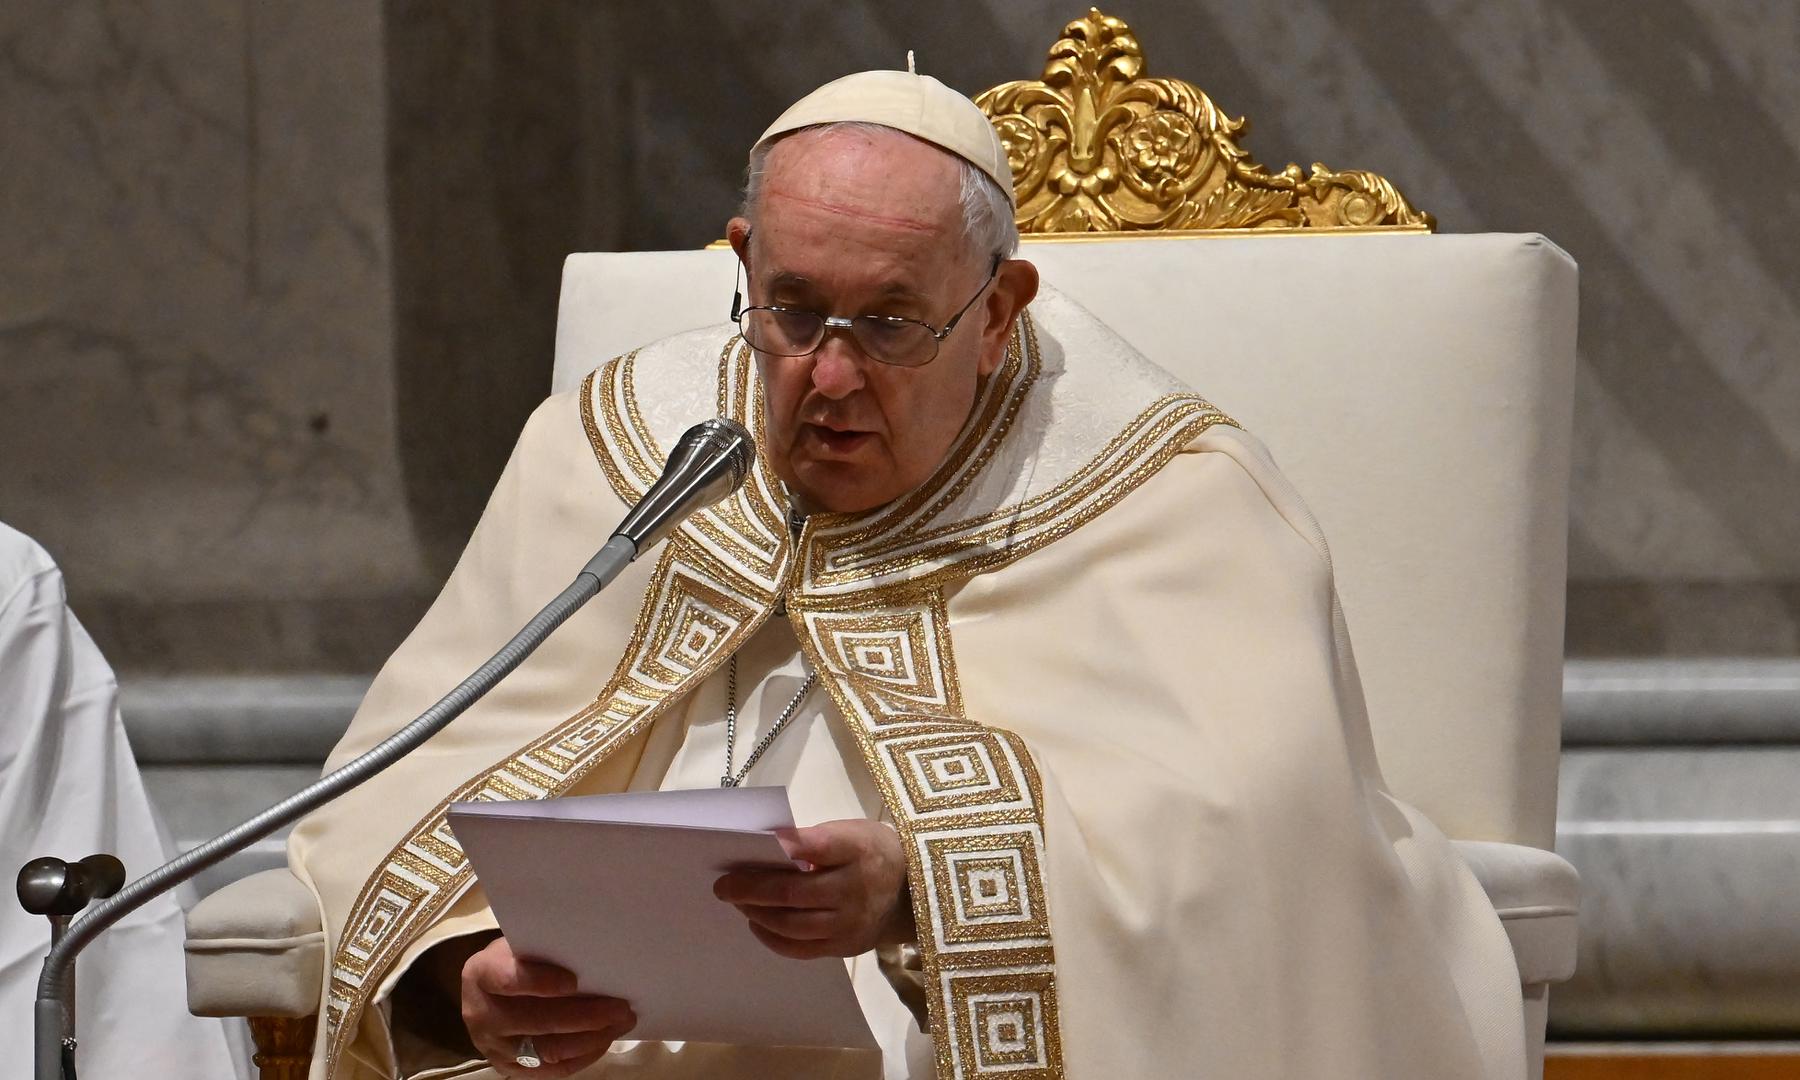 Francisco homenageia Bento XVI, 1º papa da era moderna a renunciar - Filippo MONTEFORTE / AFP

